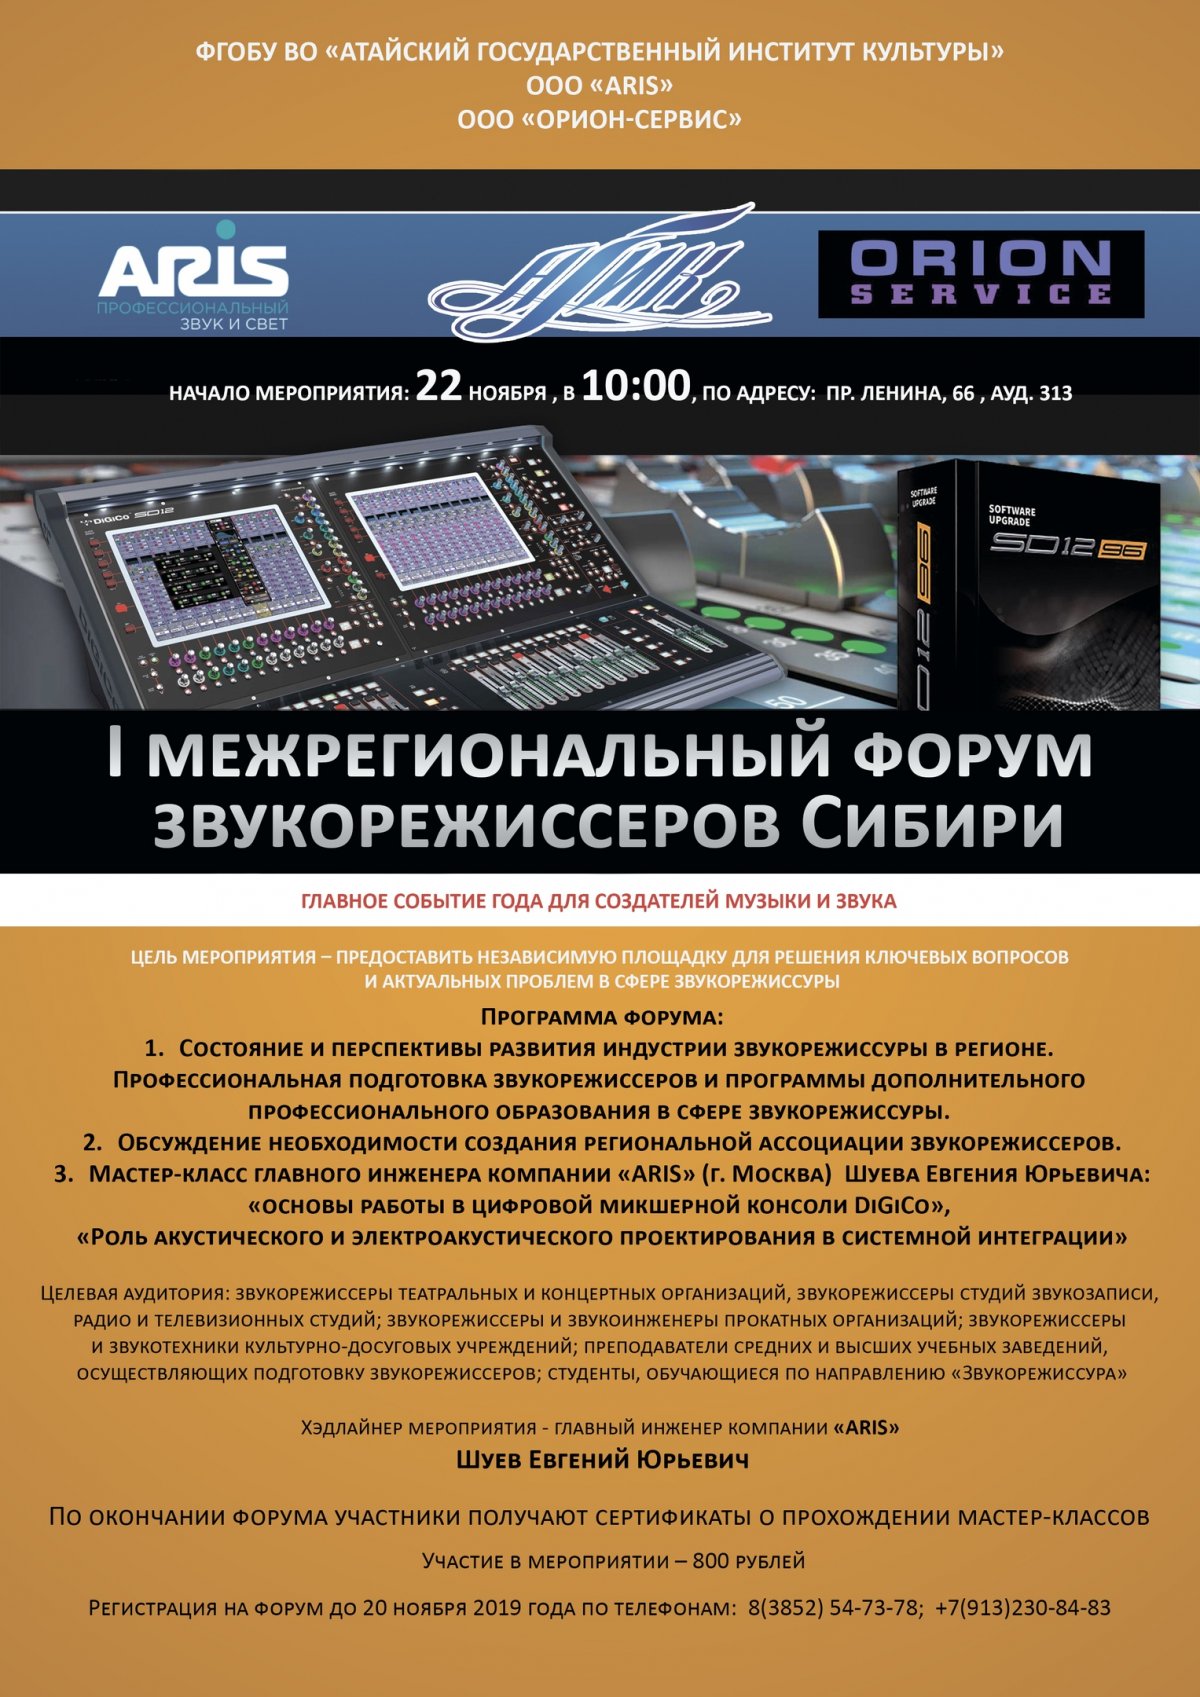 Всех приглашаем на I Межрегиональный форум звукорежиссеров Сибири!